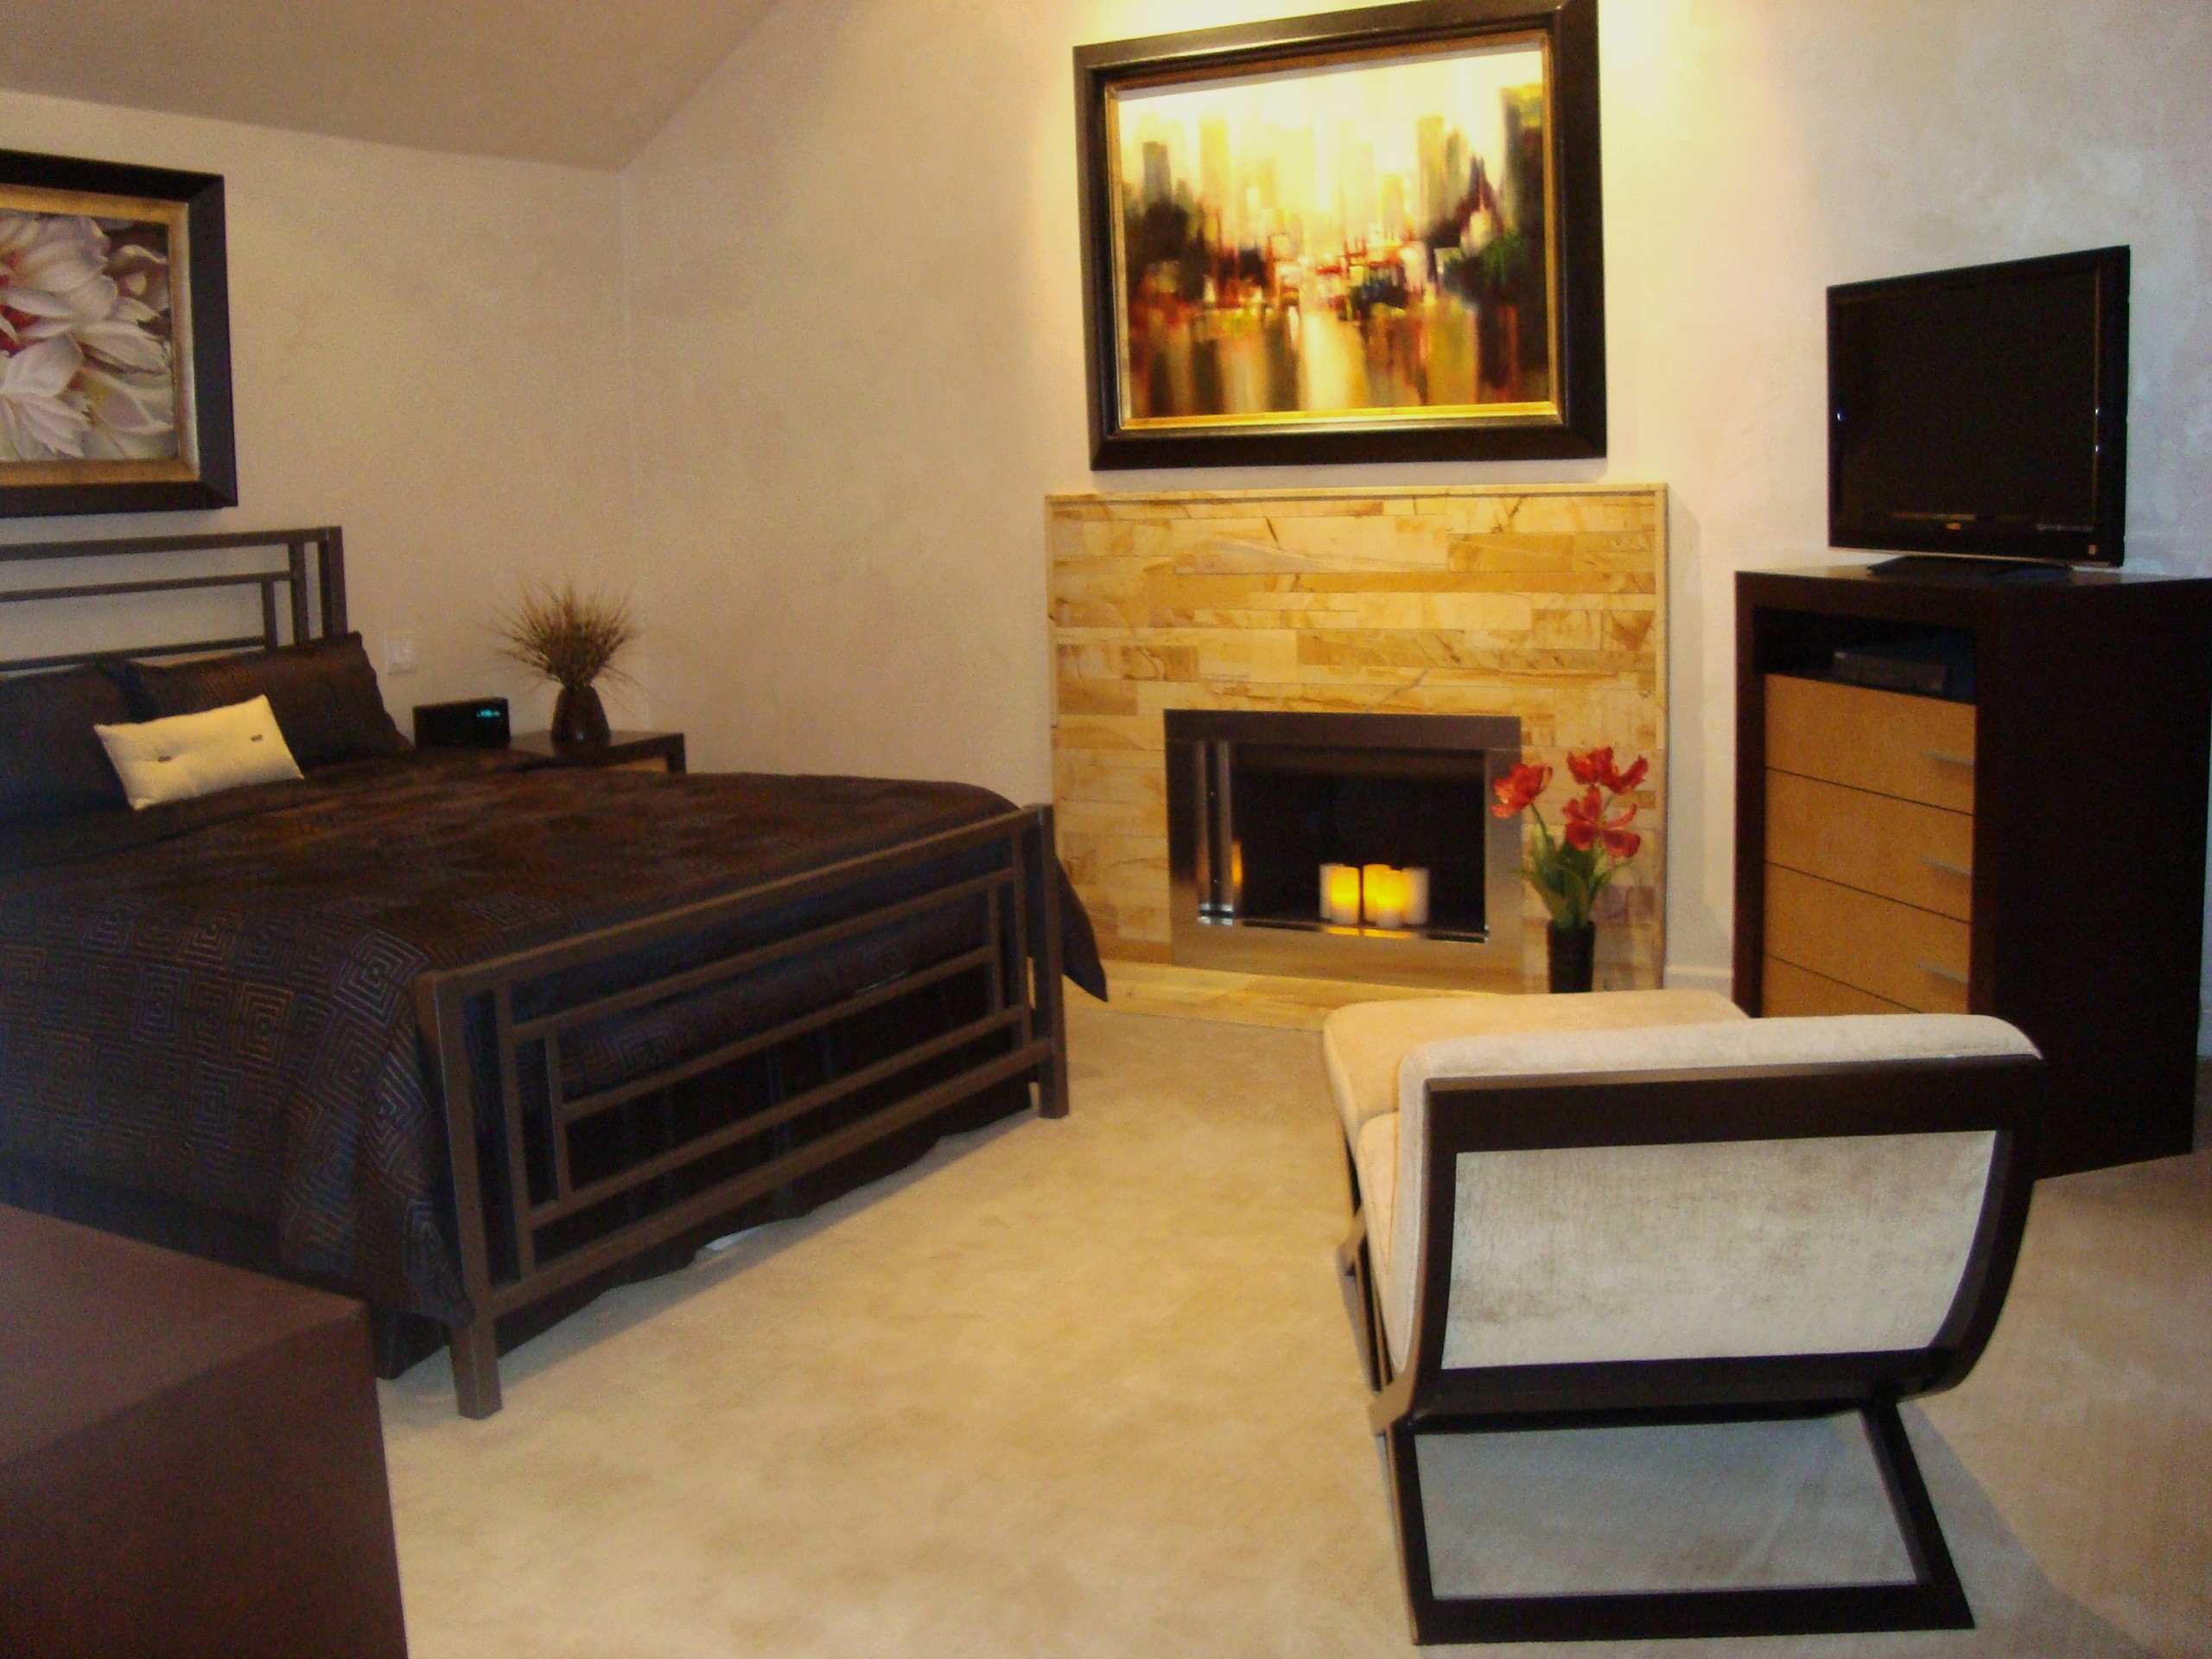 Lofrano Bedroom Remodel